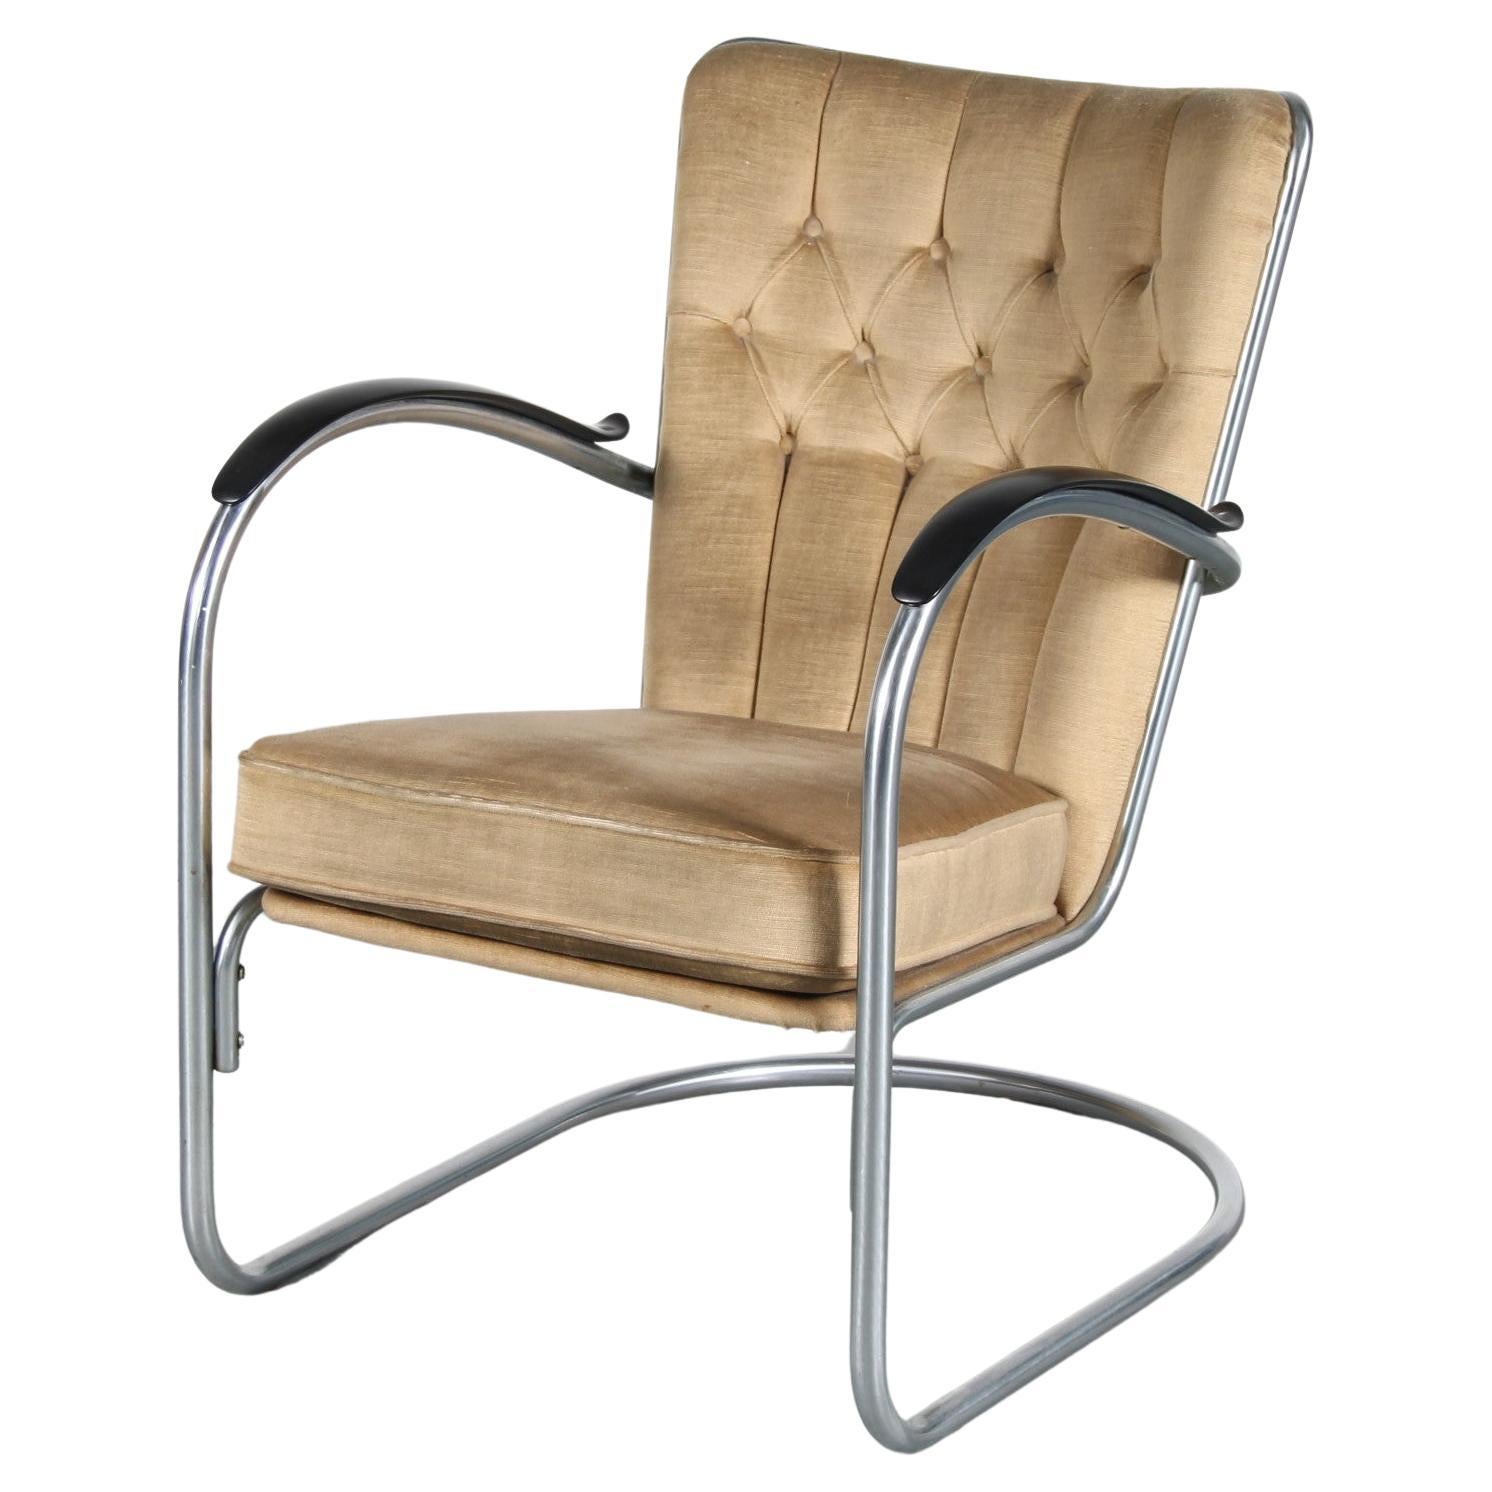 1950s “model 412” easy chair for Gispen, Netherlands